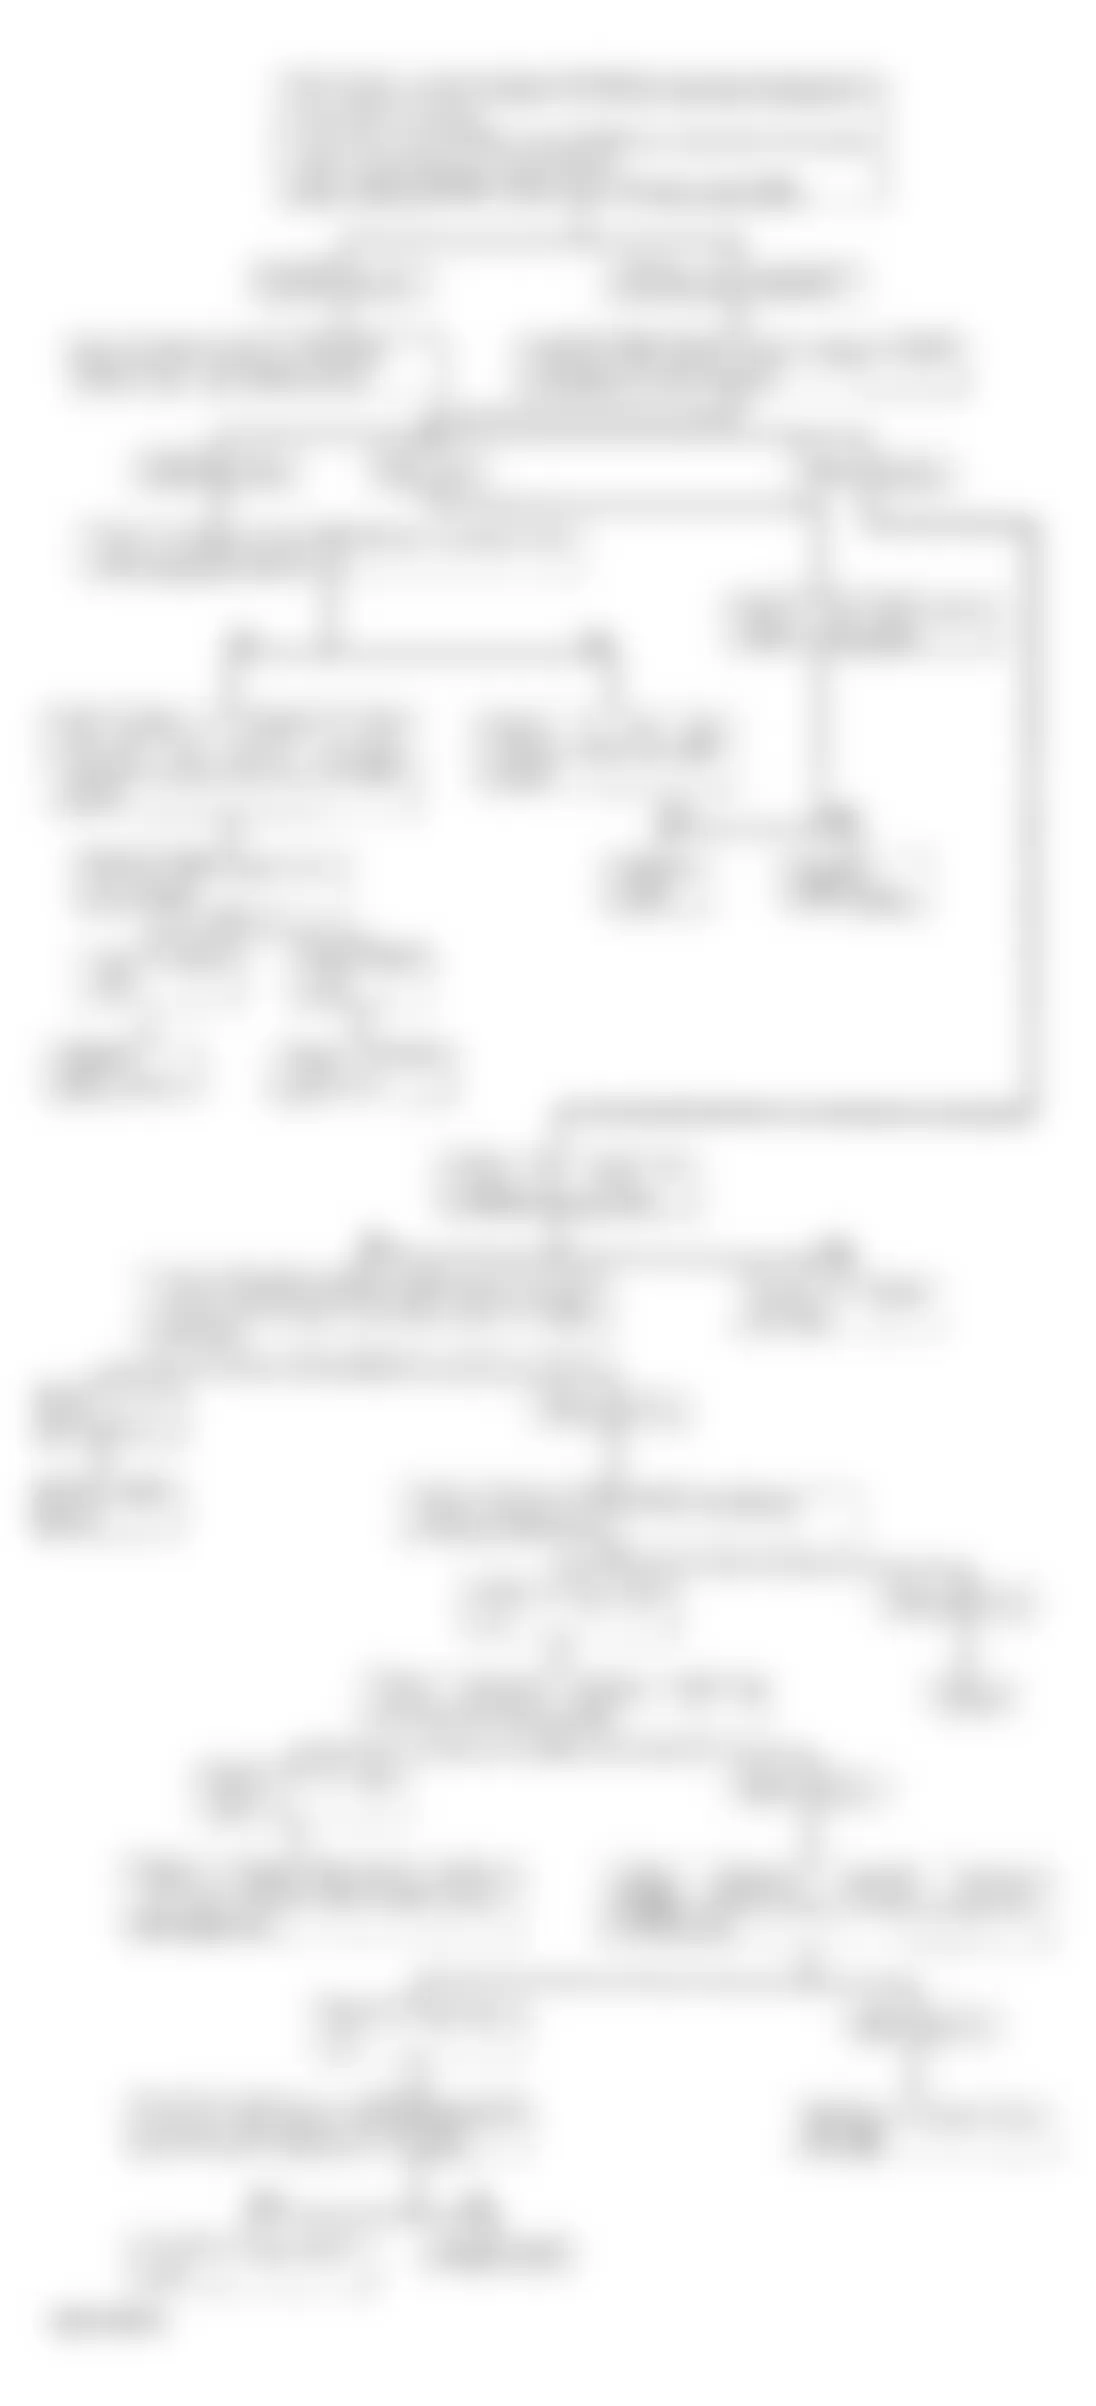 Isuzu Rodeo LS 1995 - Component Locations -  Code 34 - Diagnostic Flowchart (1 Of 2)